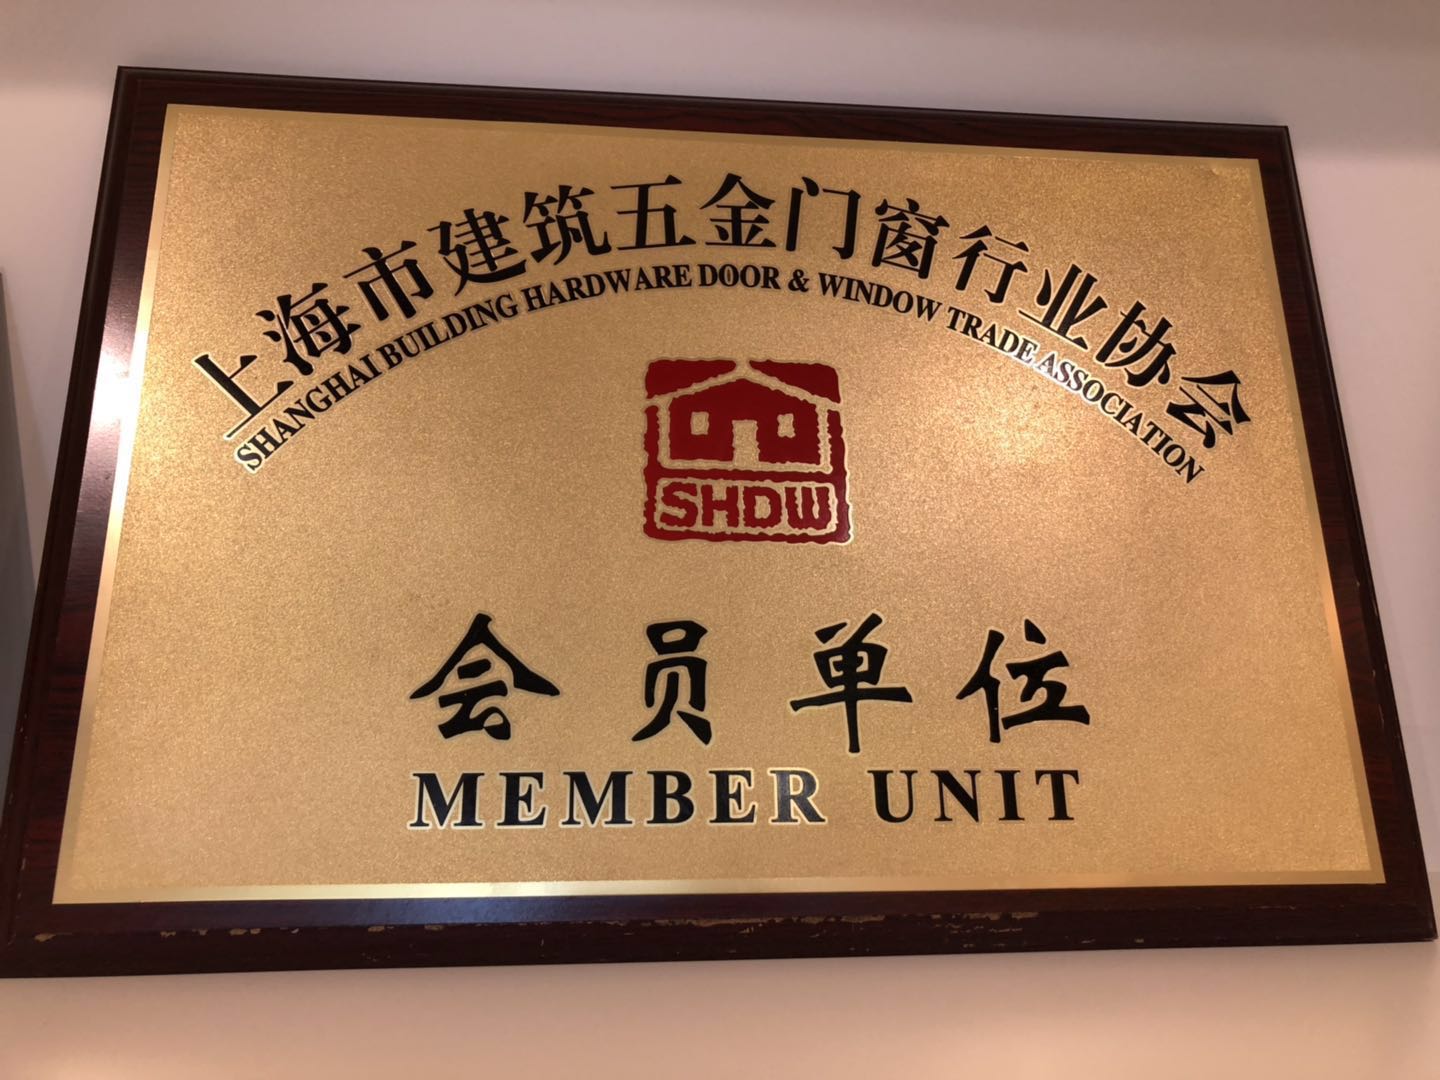 上海市建筑五金门窗行业协会